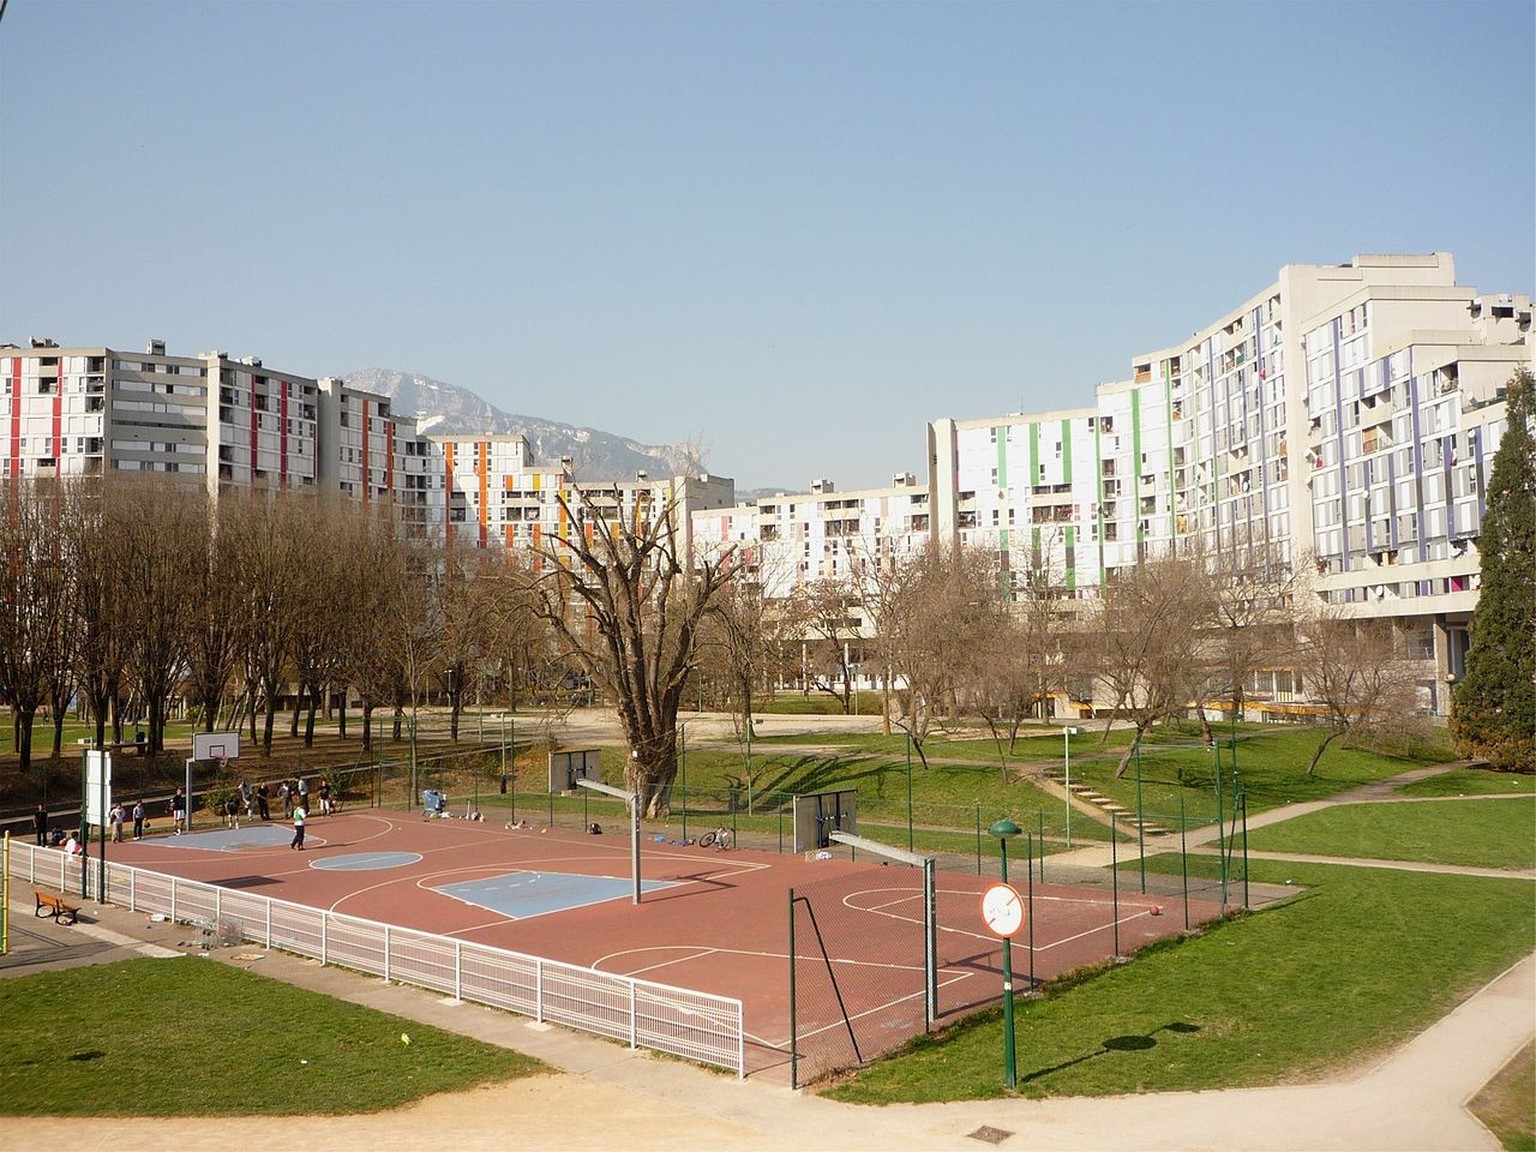 La Villeneuve de Grenoble.
https://fr.wikipedia.org/wiki/Quartier_prioritaire_de_la_politique_de_la_ville#/media/Fichier:Parc_Jean_Verlhac_2_-_Grenoble.JPG